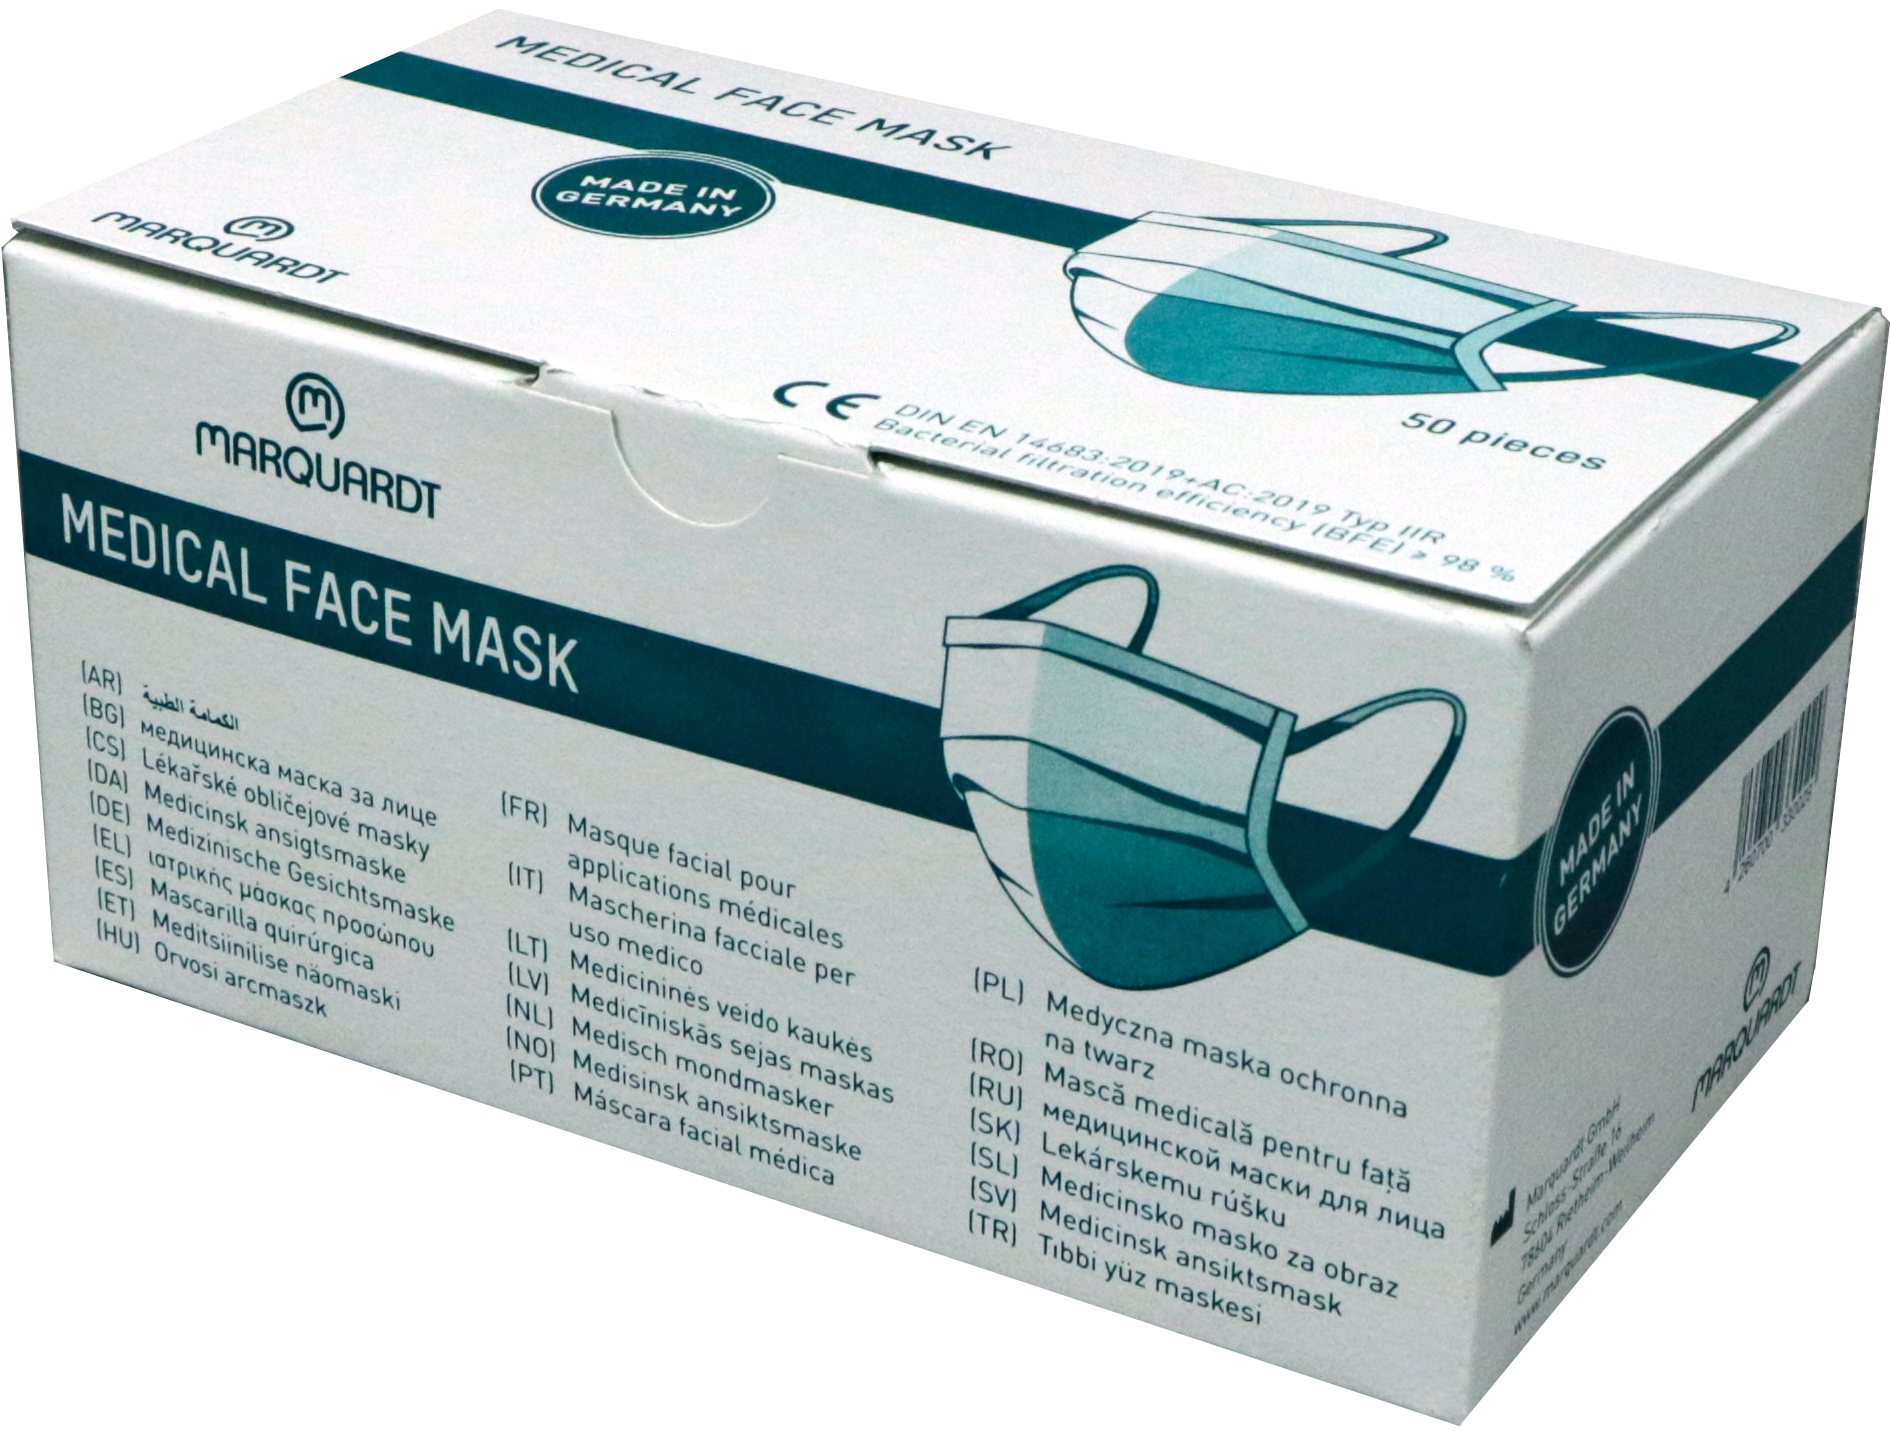 Marquardt Typ II R Medizinische Mundschutzmasken 3- lagig (50Stk.) (EN 2016/425 zertifiziert)